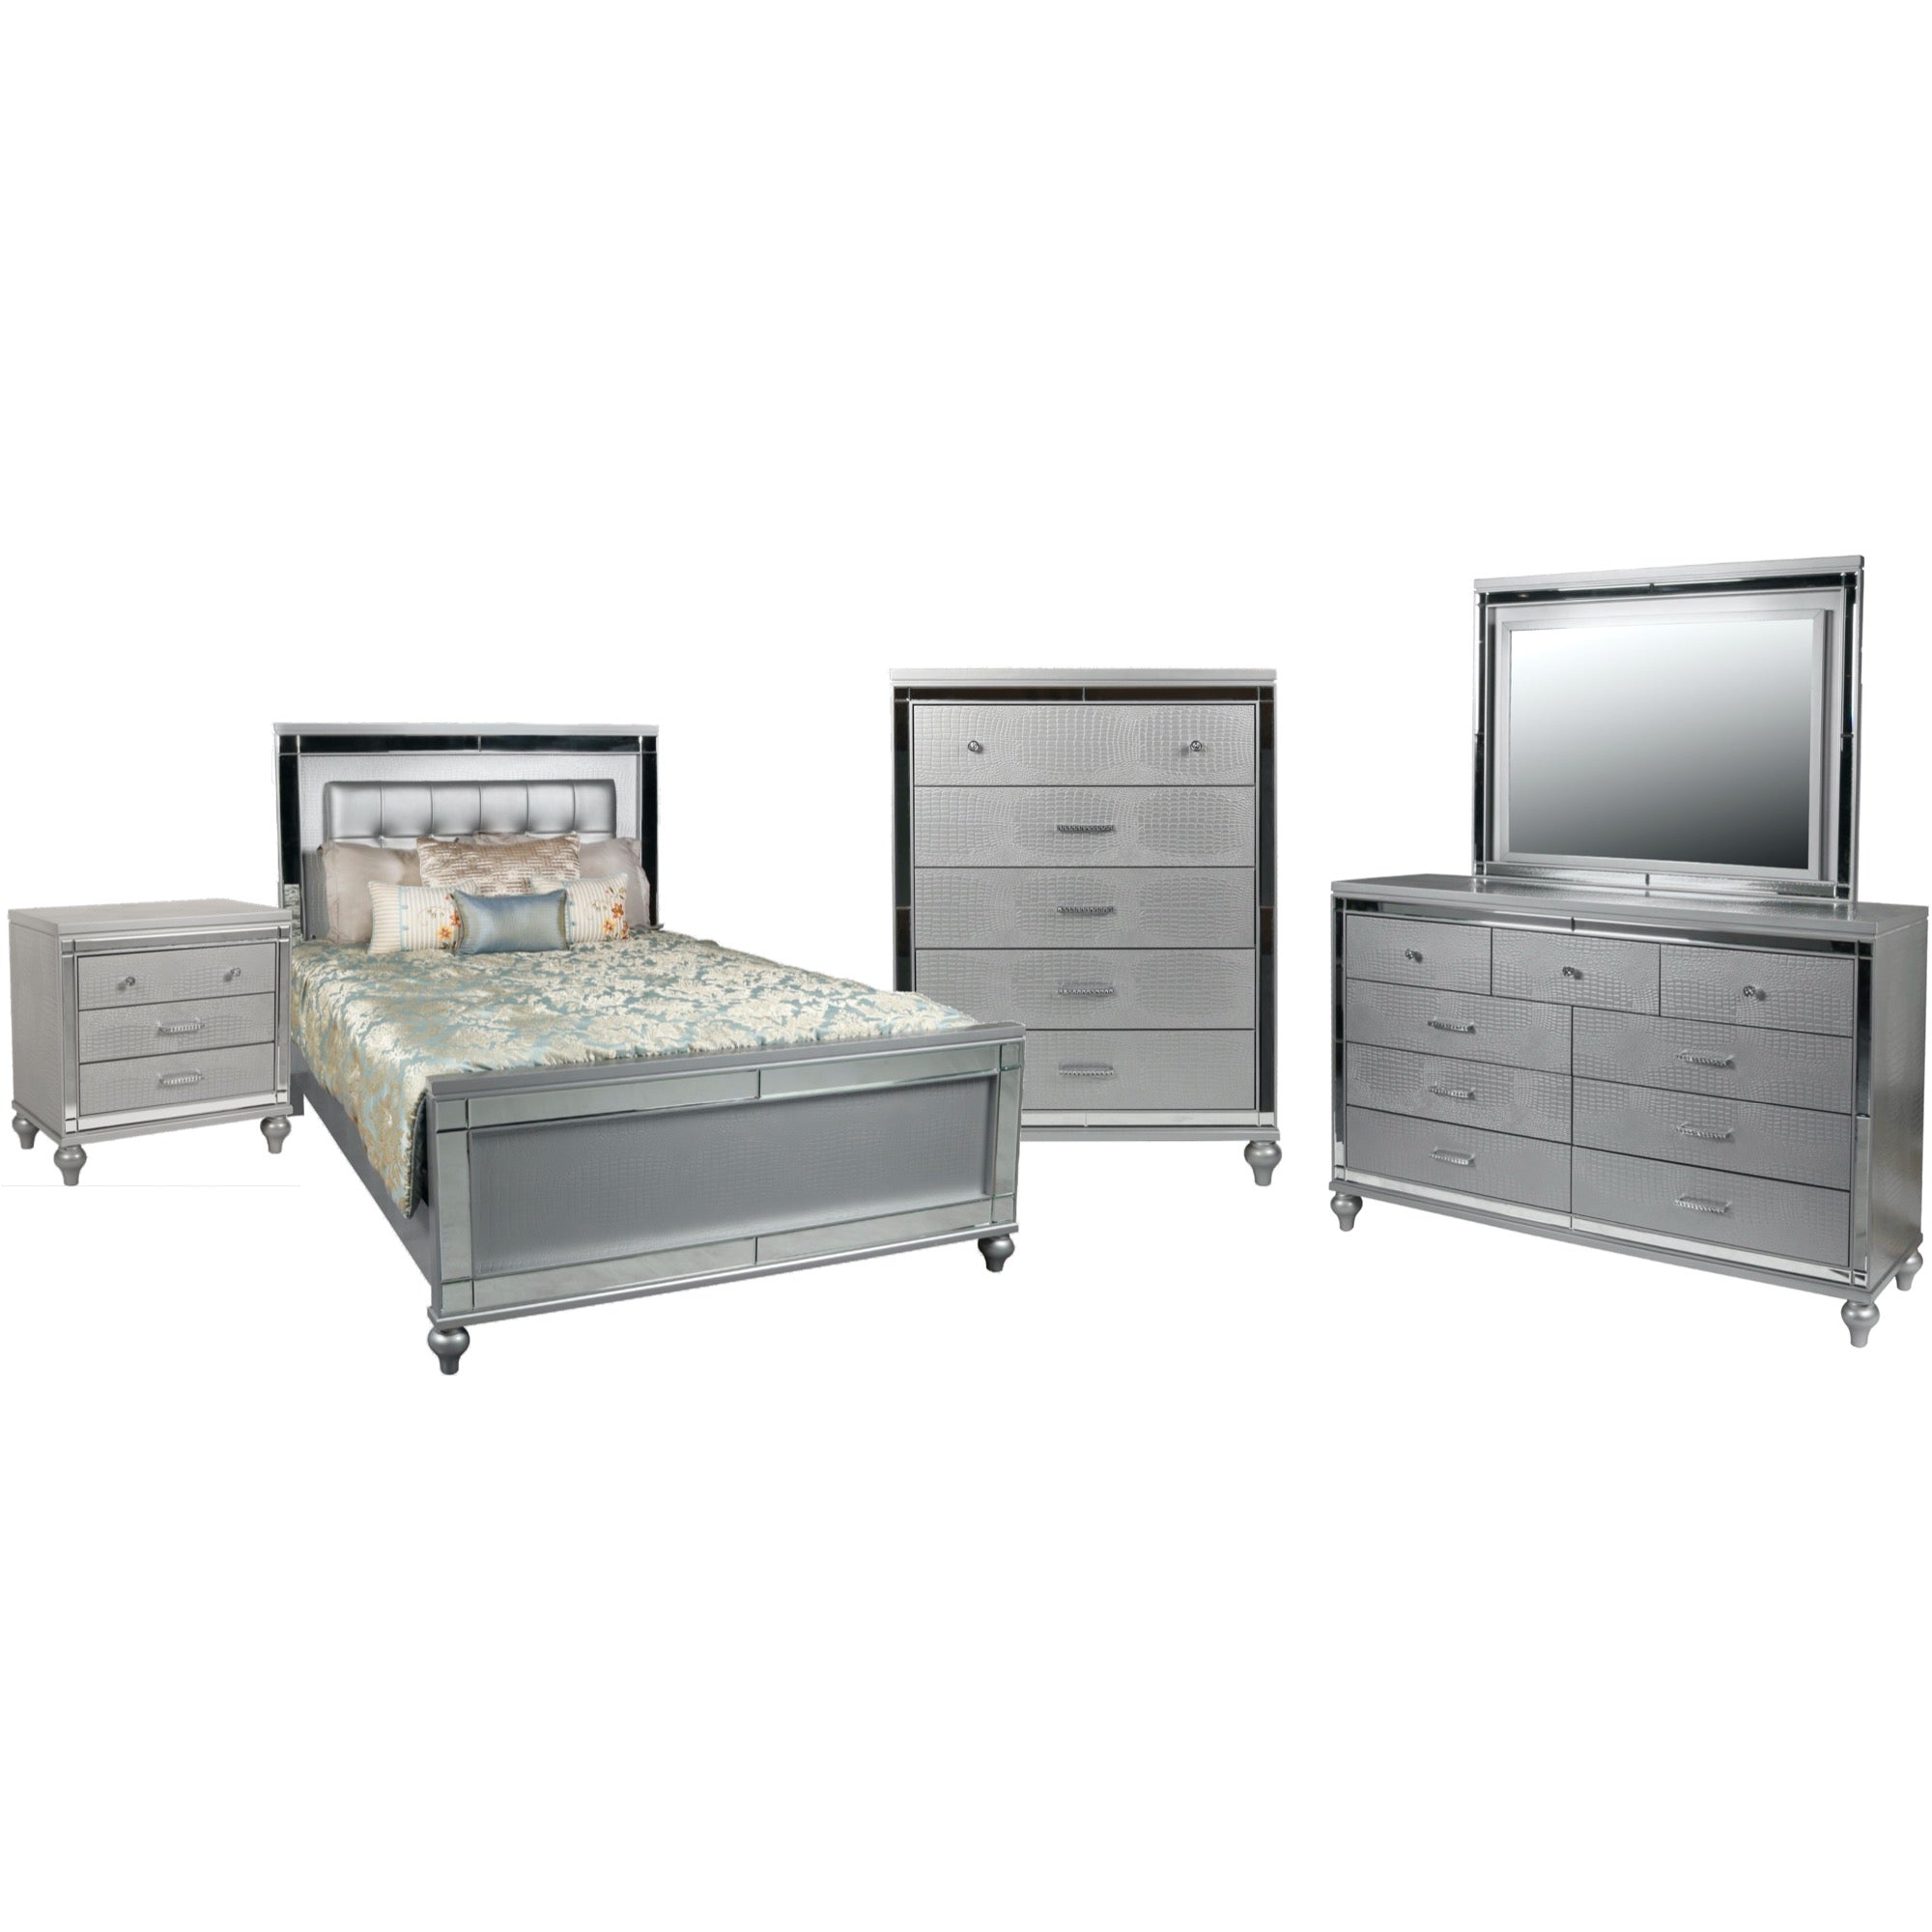 Valentino Queen 5 Piece Bedroom Set – Adams Furniture